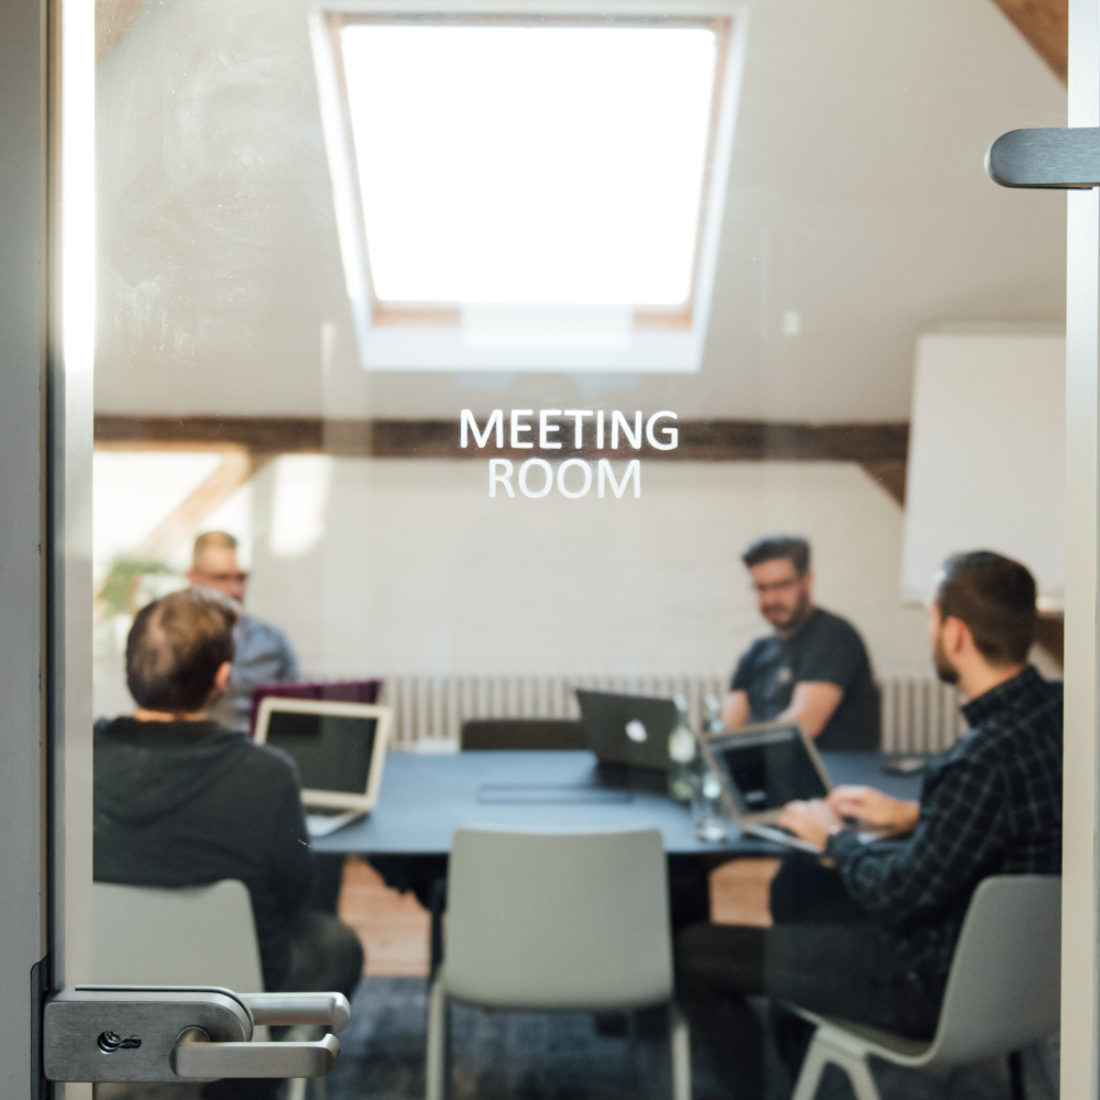 Blick in einen Meetingraum von Bleech, das Wort Meeting Room an der Glastür ist fokussiert.